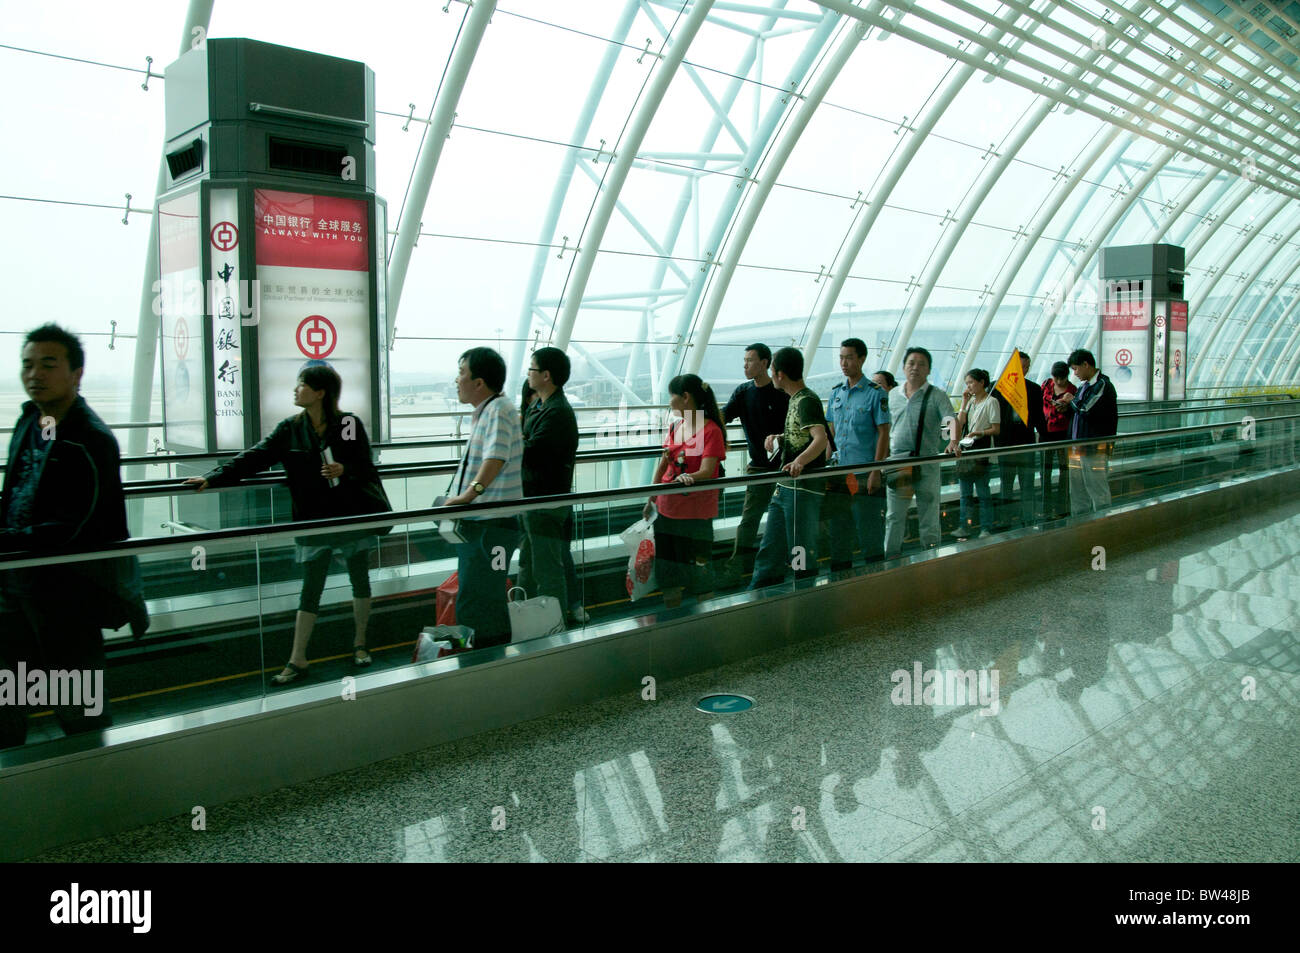 La Chine .le passager au nouveau terminal de l'aéroport international de Guangzhou, hôte de la province du Guangdong 2010 Jeux Asiatiques Banque D'Images